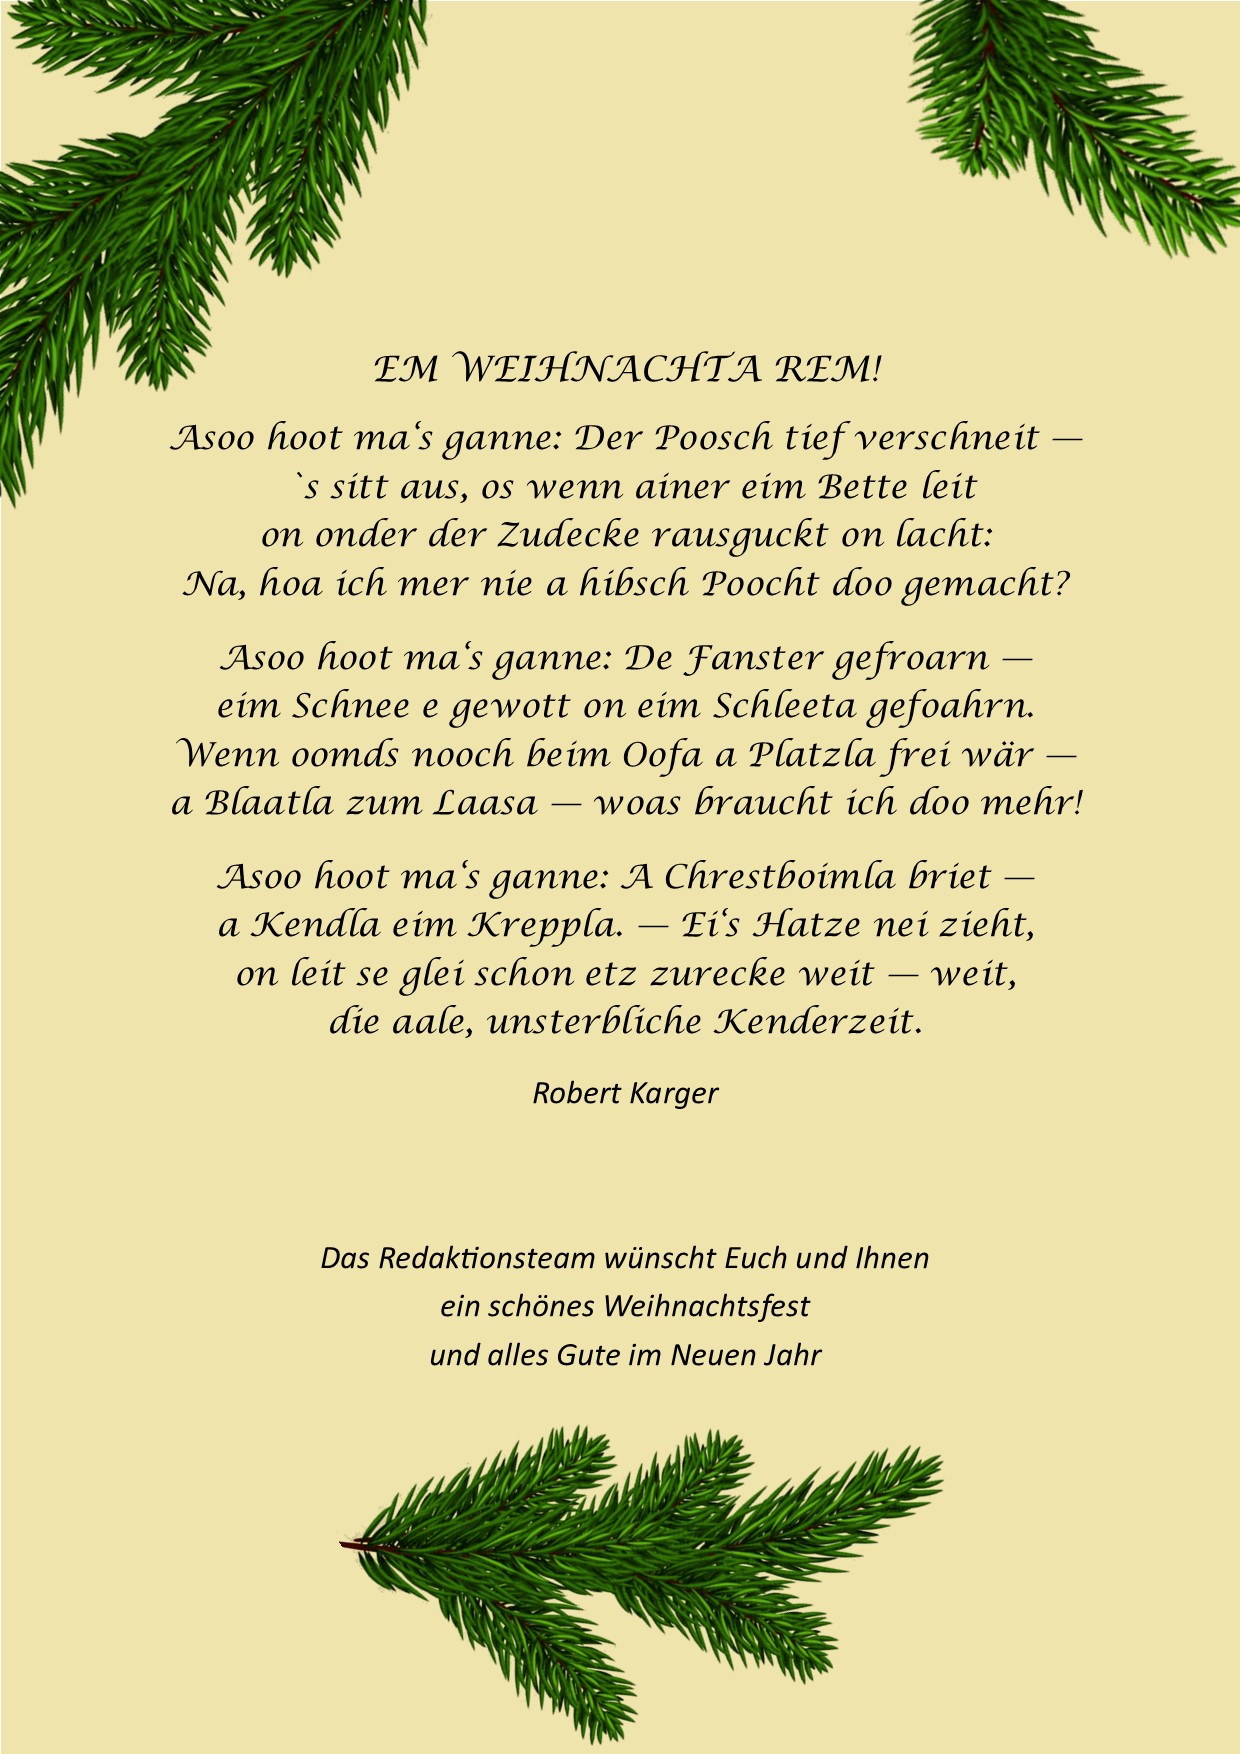 Weihnachtsgrüße 2023 mit einem Gedicht von Robert Karger (+1946) vom Redaktionsteam